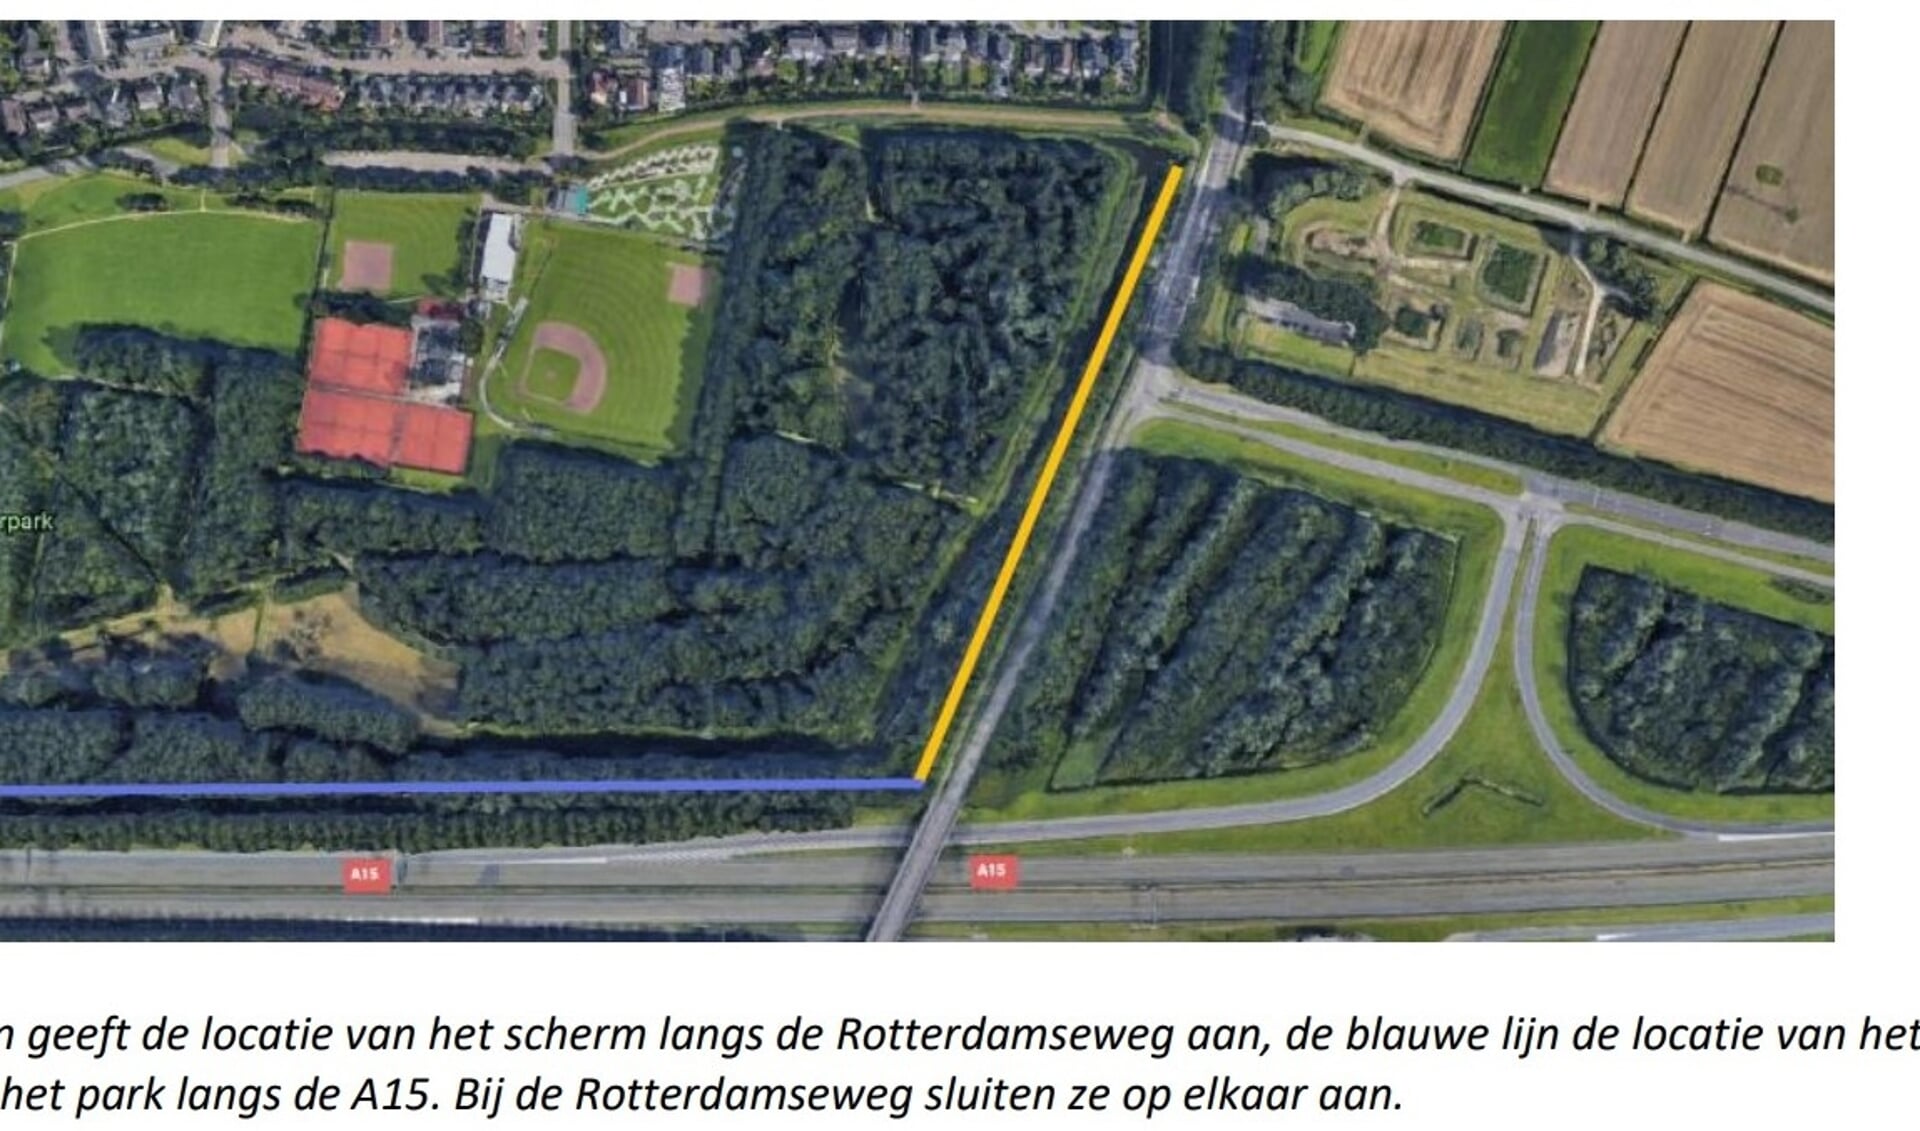 Het scherm langs de Rotterdamseweg in geel aangegeven, blauw is het geplande scherm langs rijksweg 15 in het Oosterpark